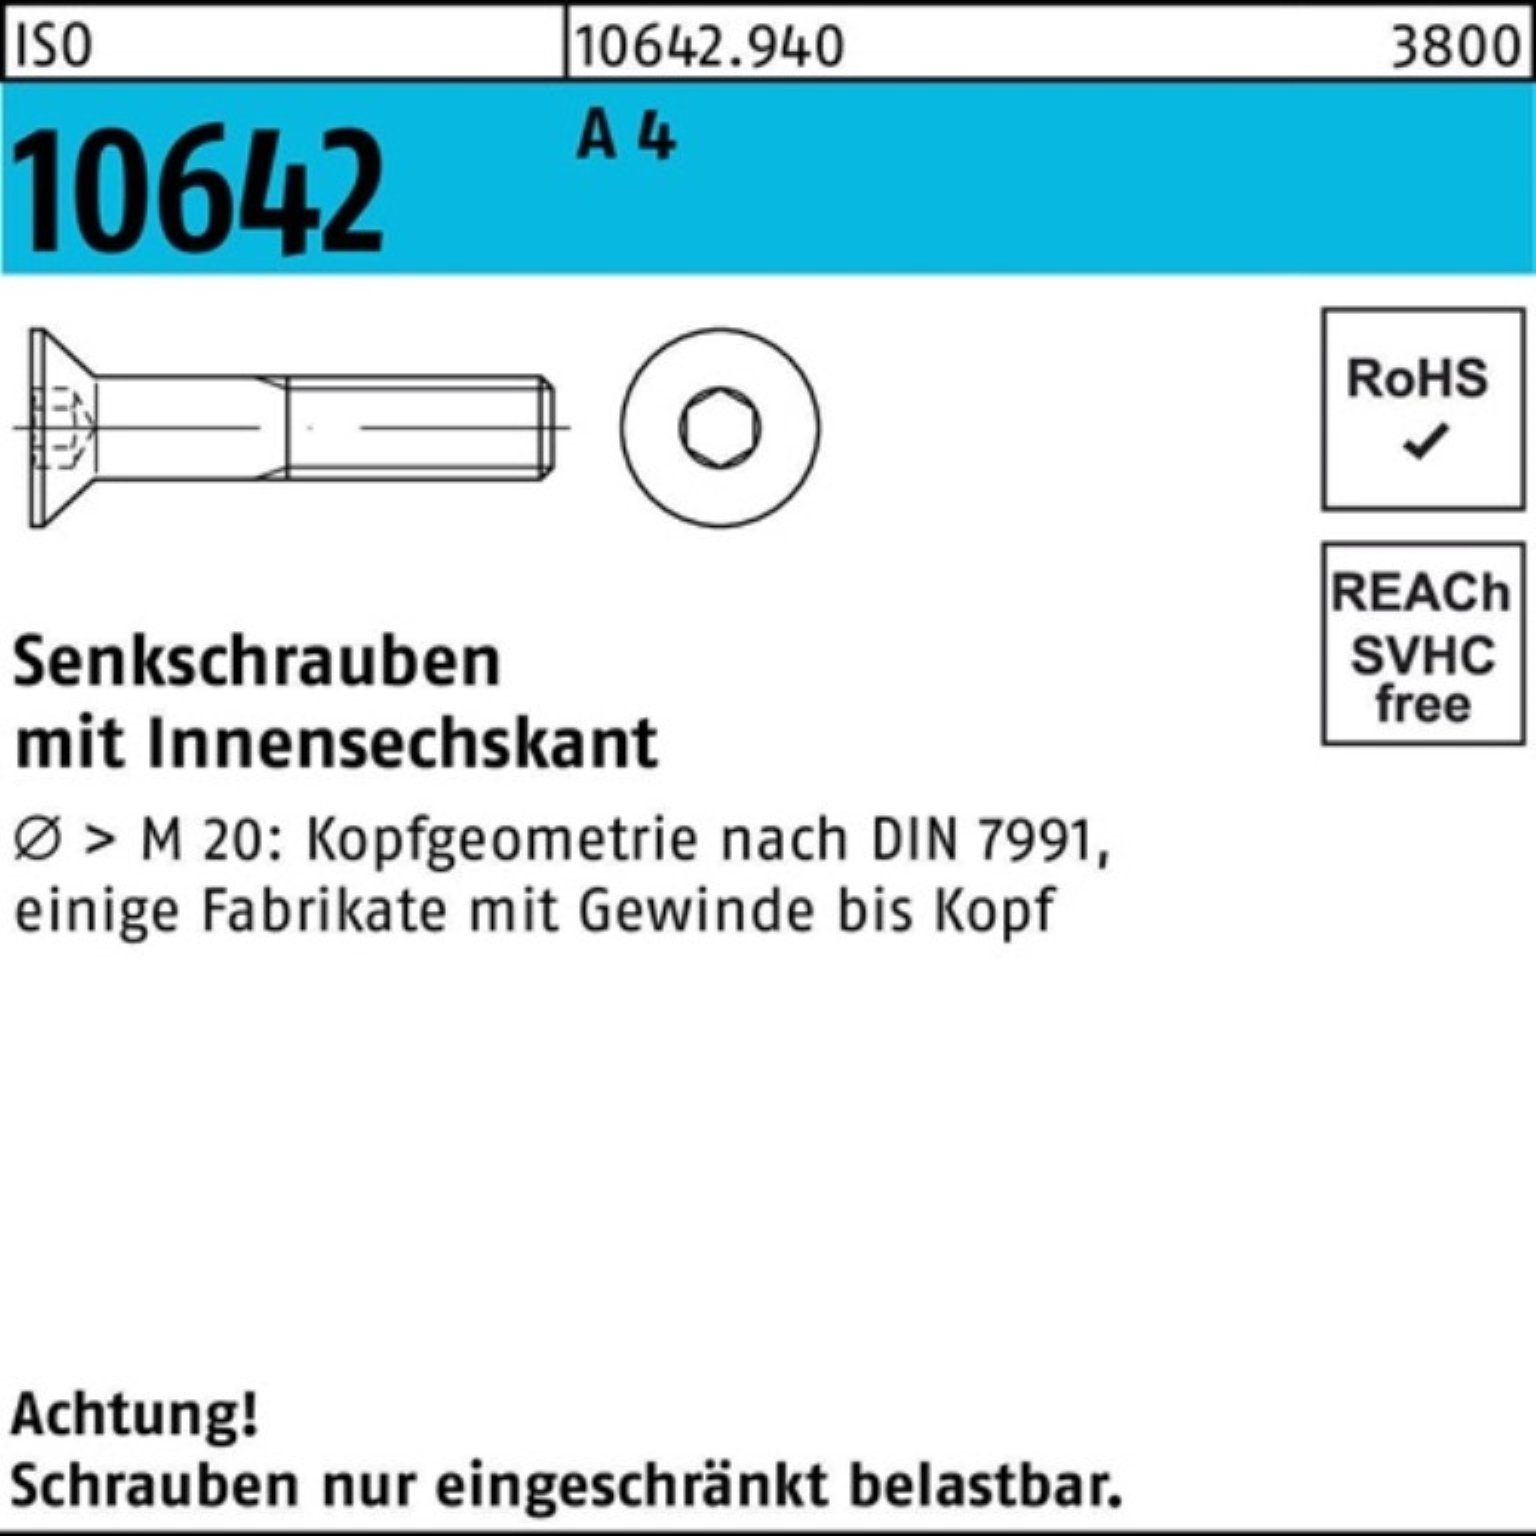 Pack Senkschraube Reyher Innen-6kt A 10642 ISO ISO 110 Stück 4 100er Senkschraube M20x 1